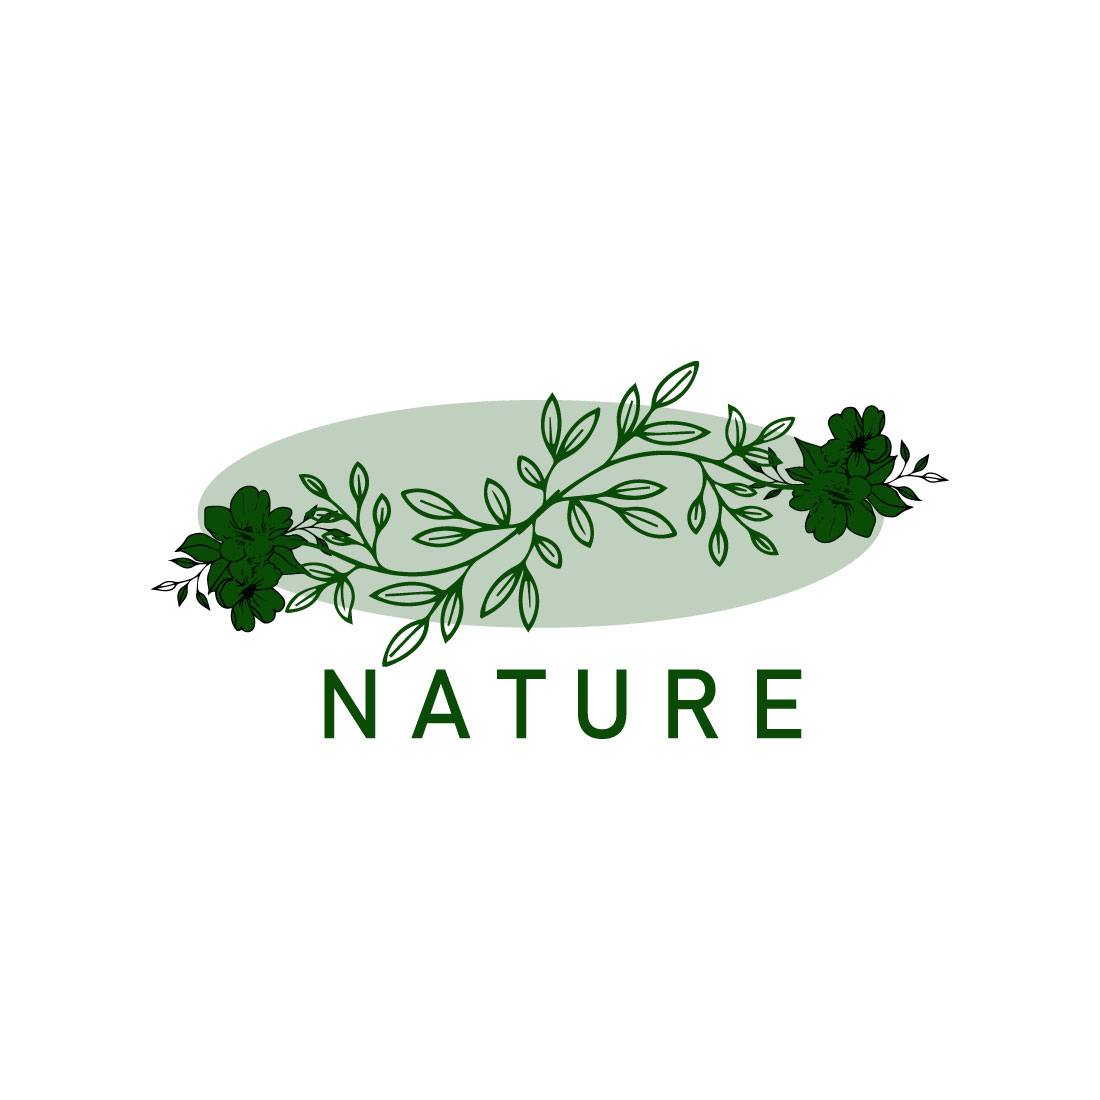 Free vintage botanical naural logo cover image.